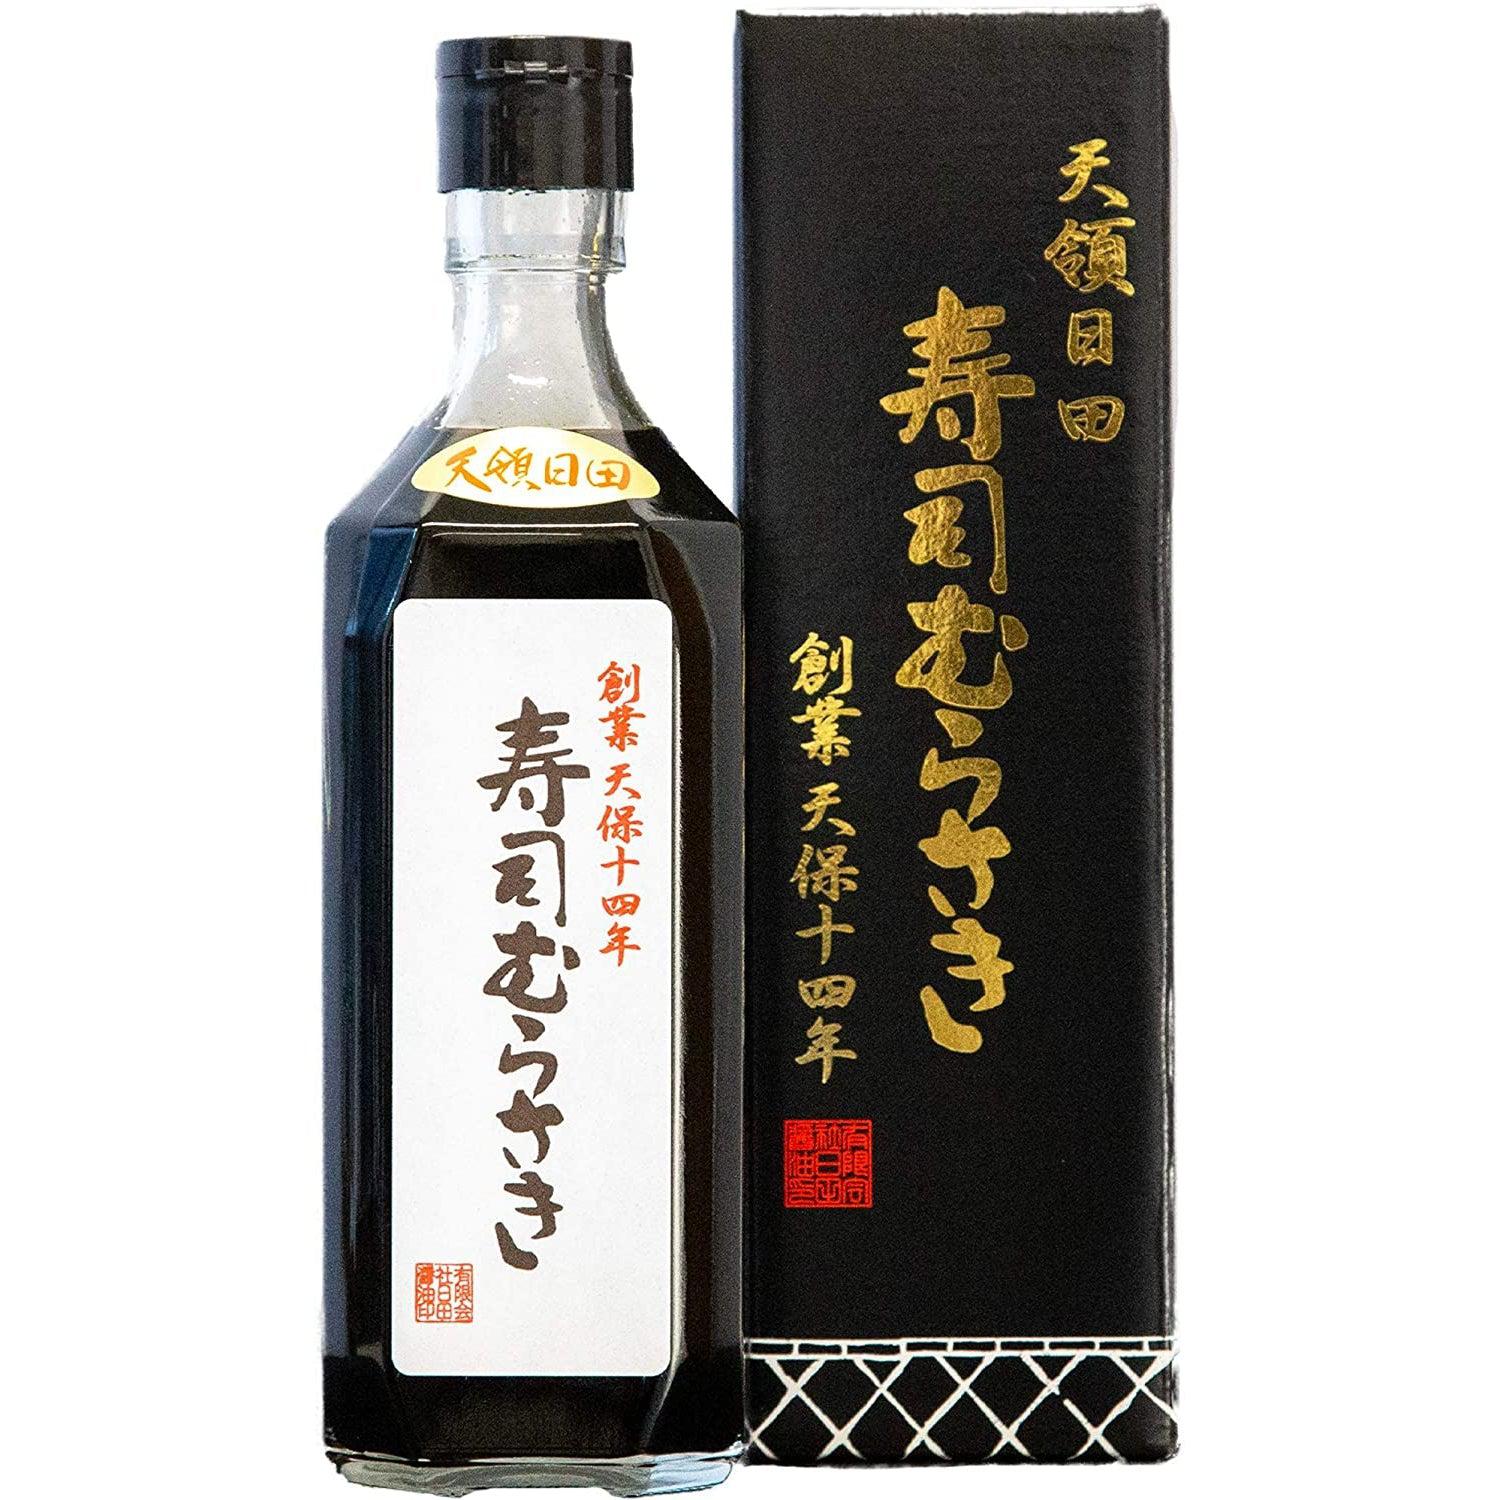 Hita Murasaki Shoyu Japanese Dark Sweet Soy Sauce 500ml, Japanese Taste